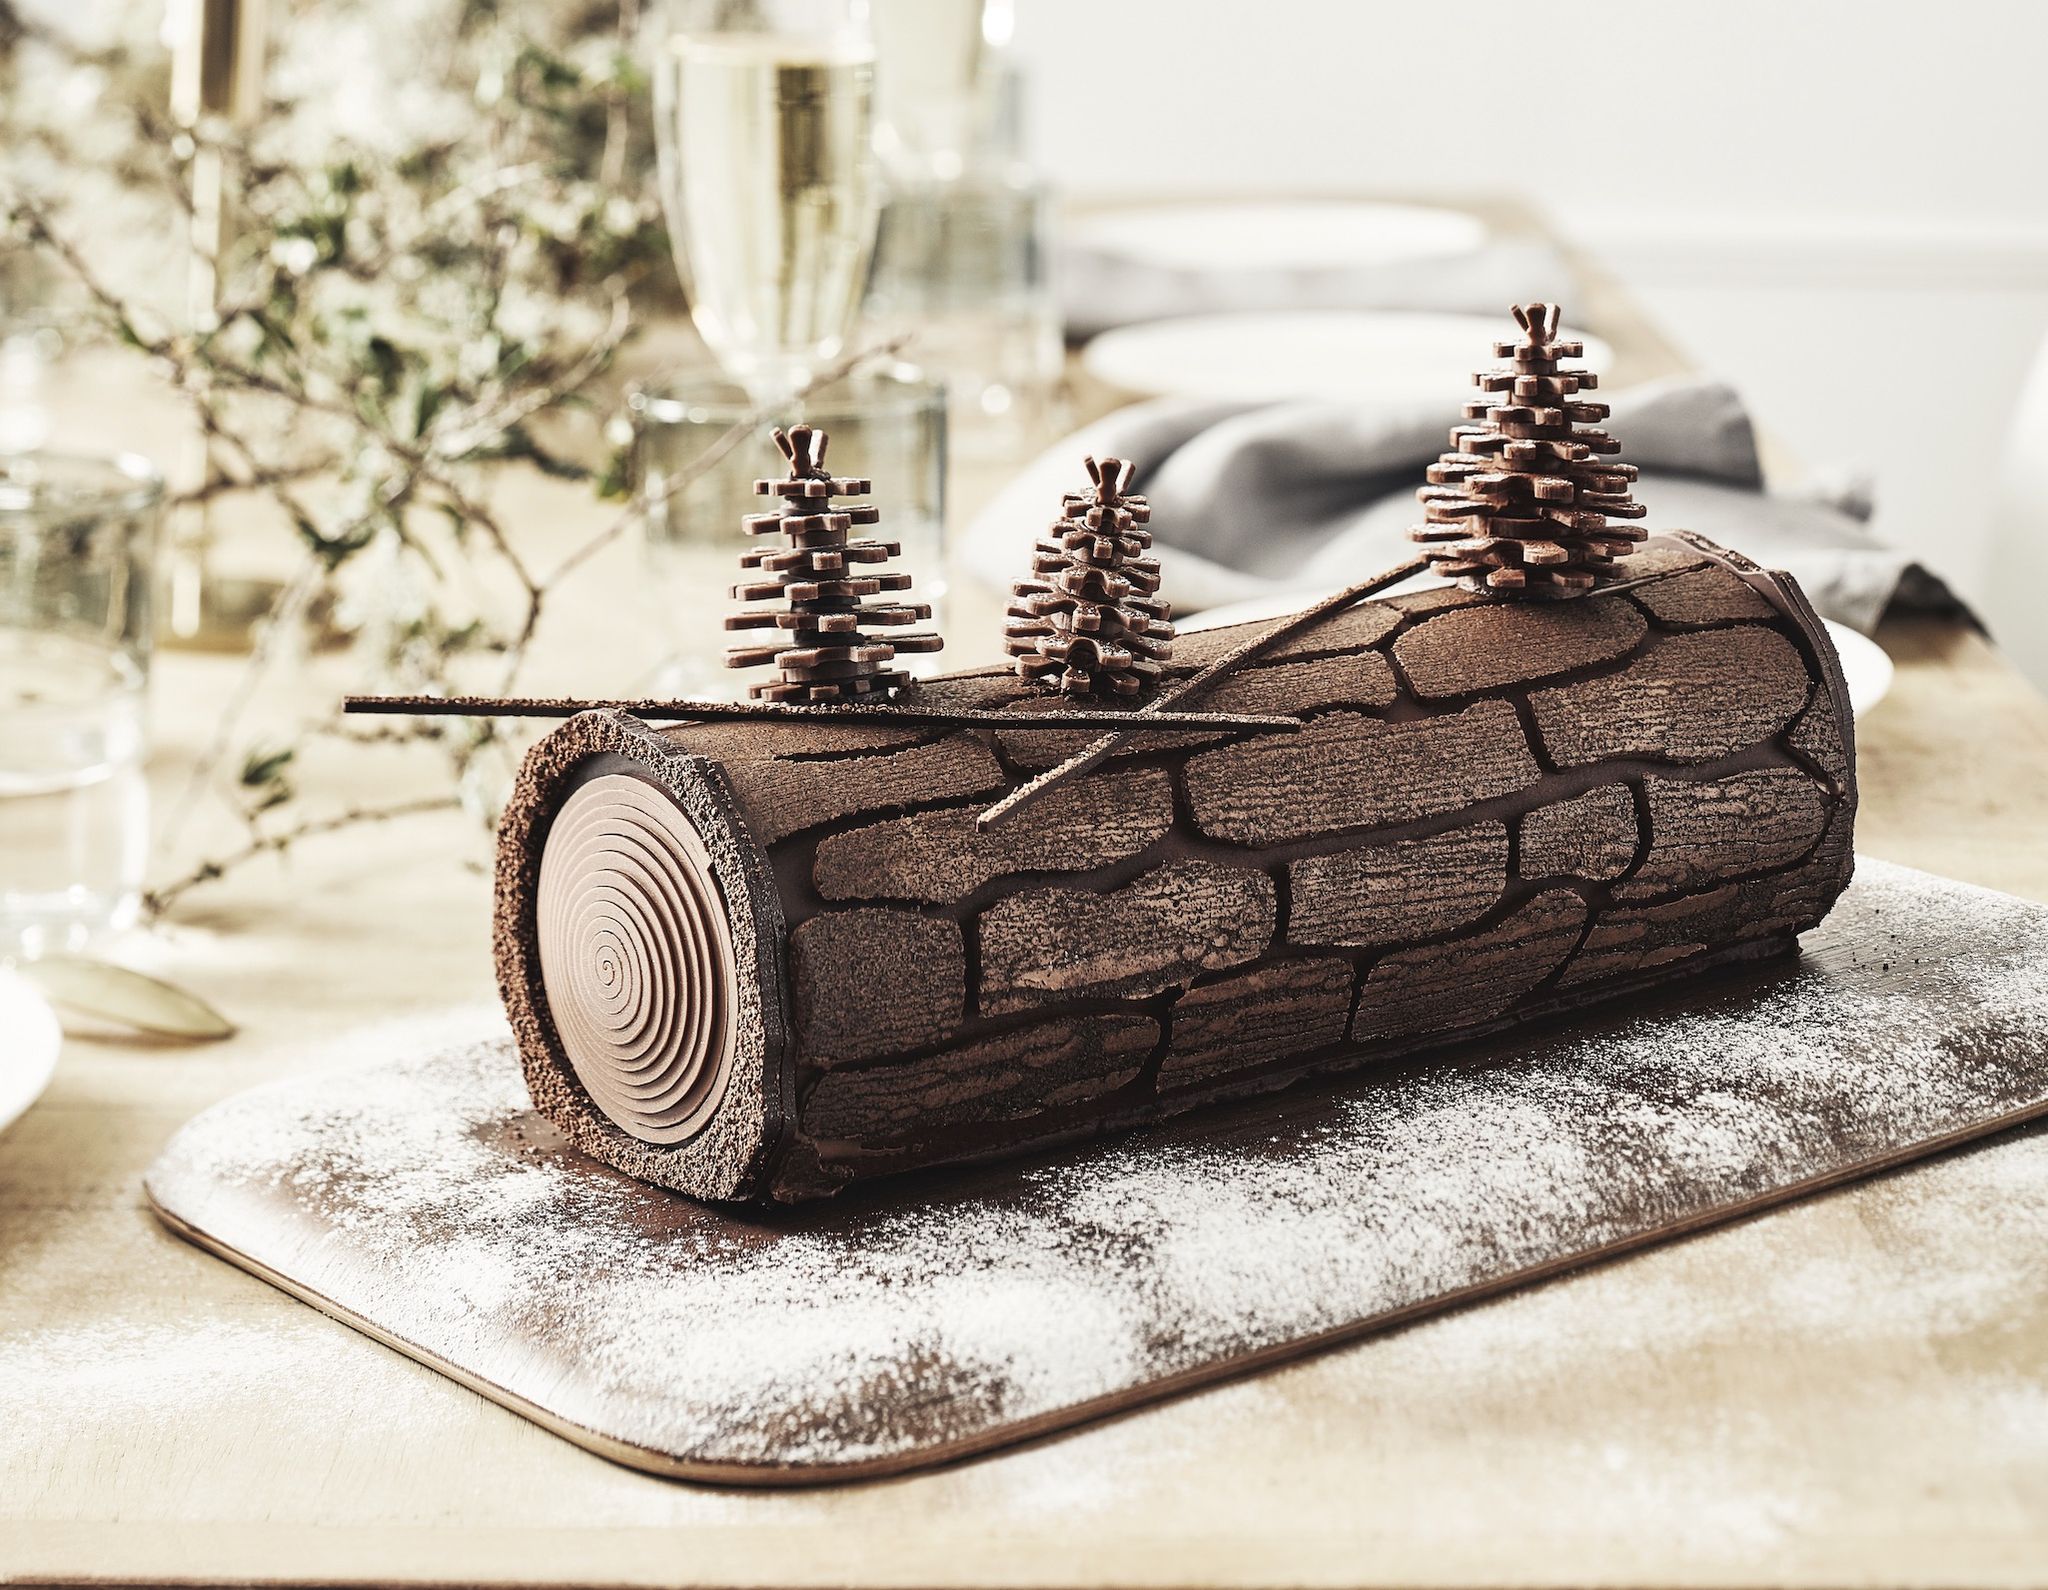 Bûche de Noël de Cyril Lignac - biscuit chocolat crème chantilly